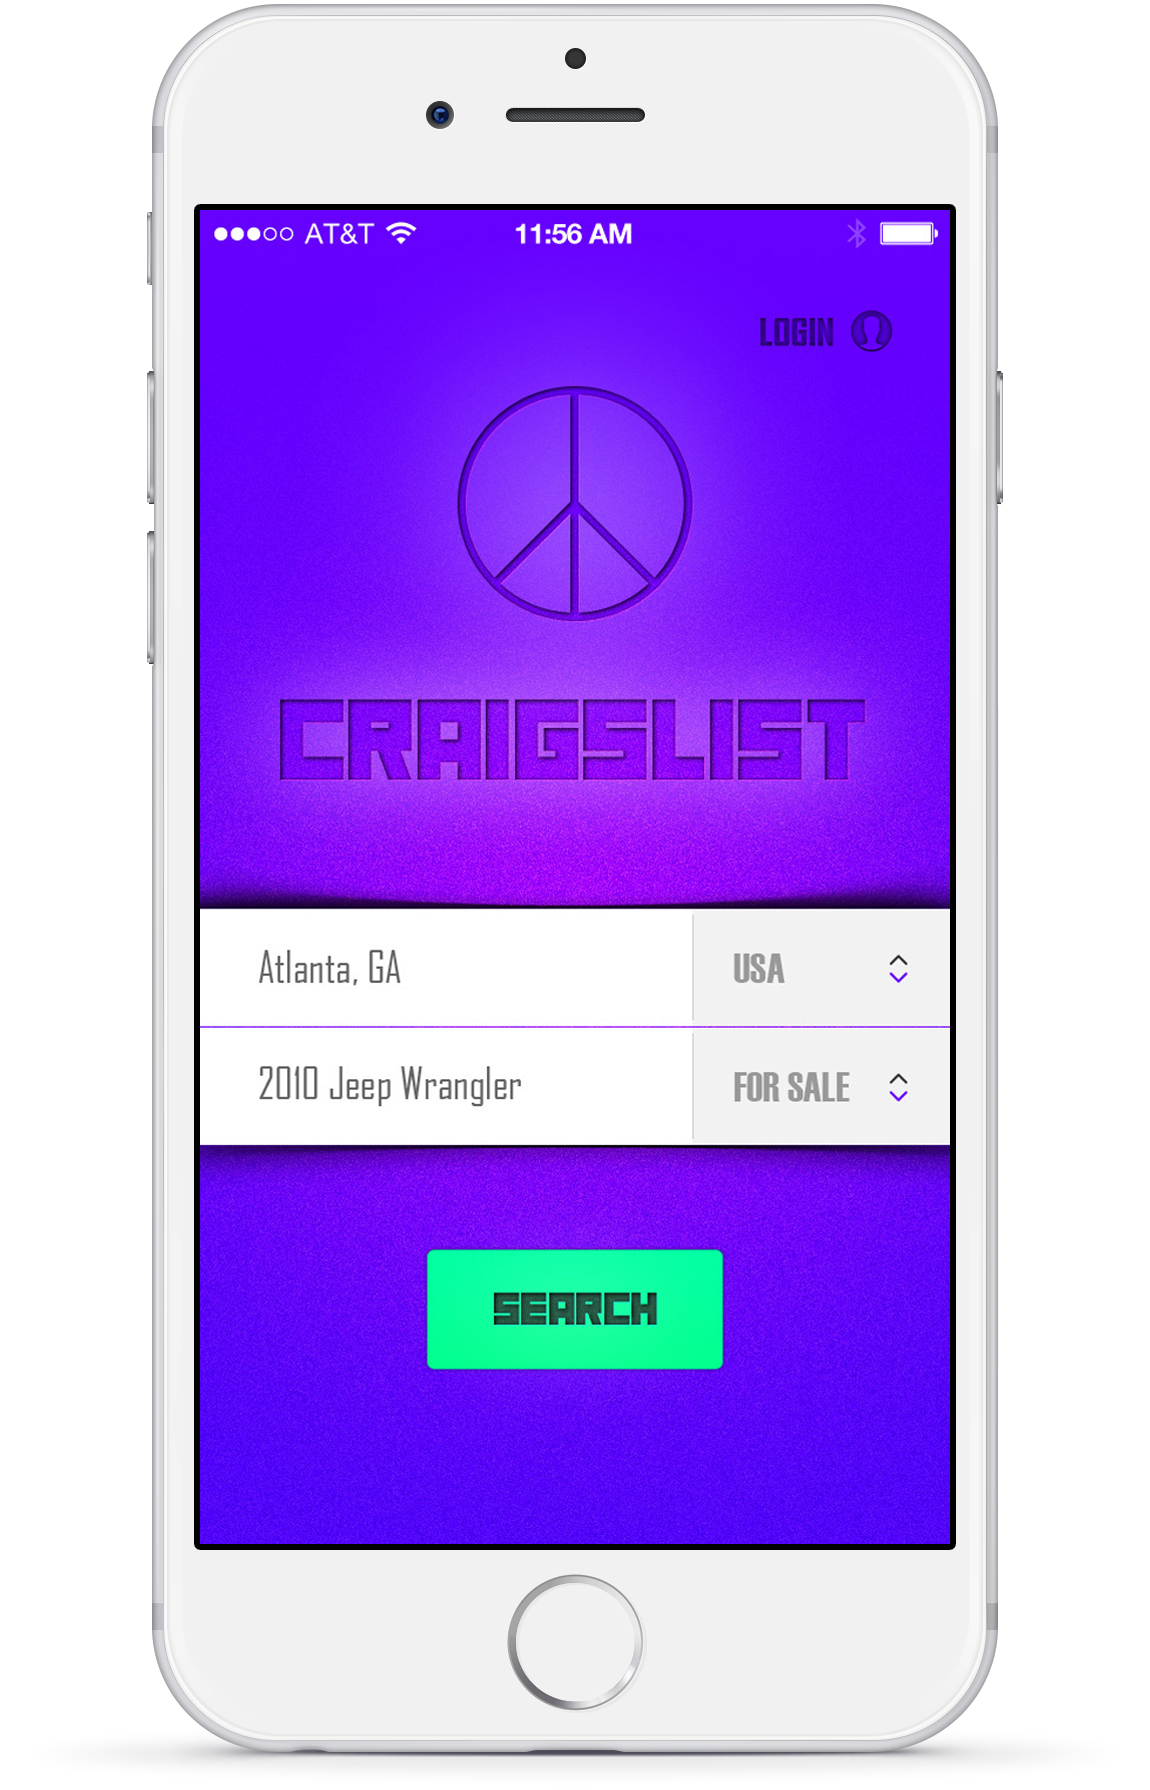 craigslist mobile app design mockup